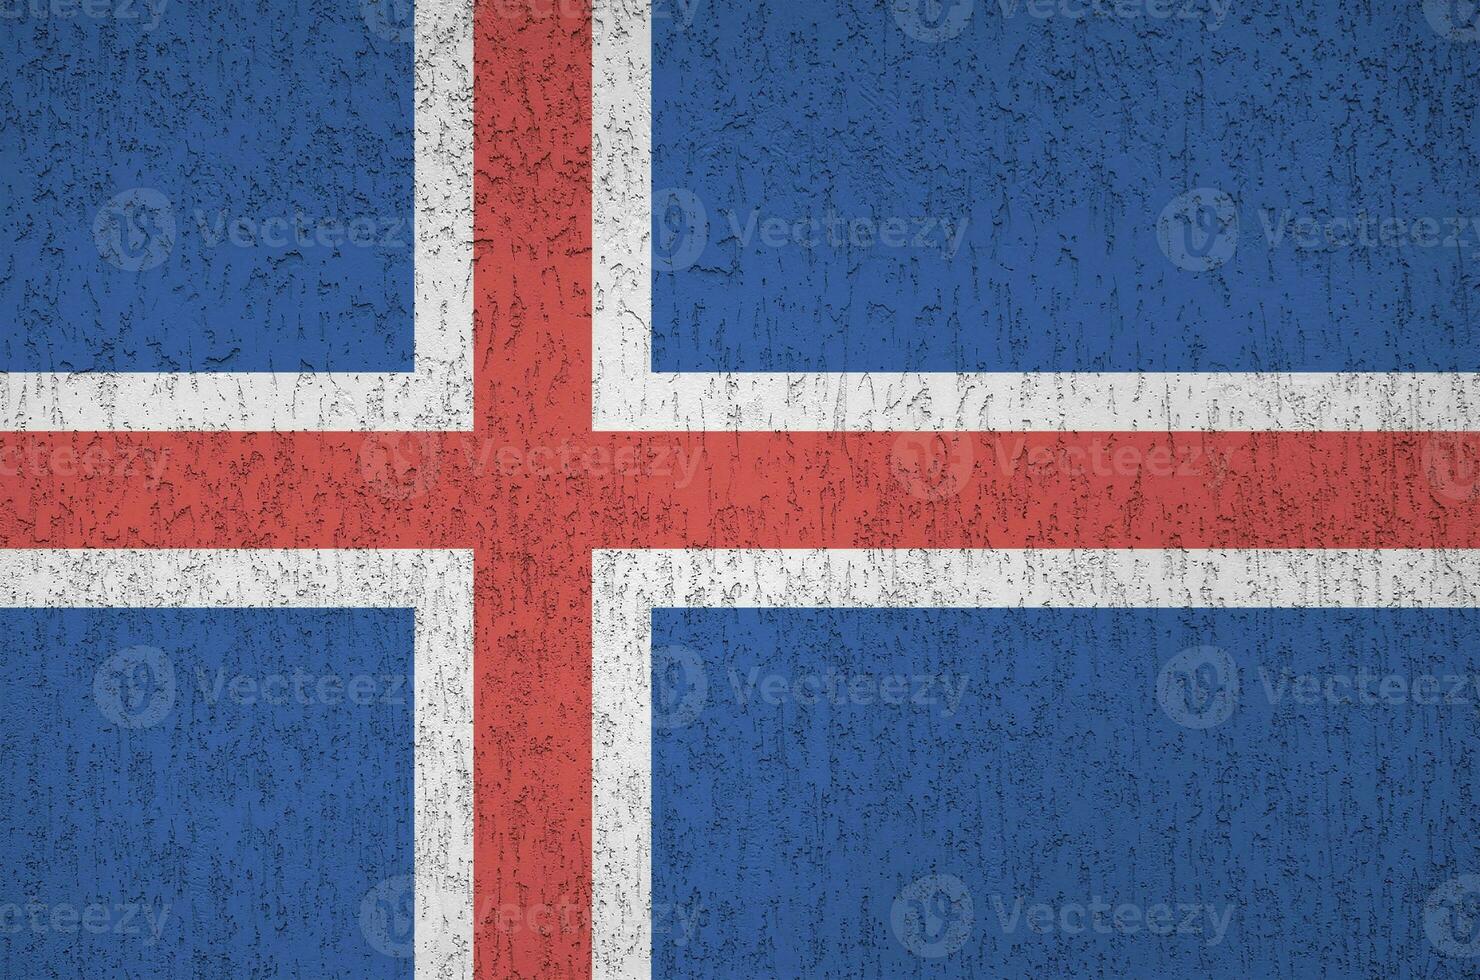 island flagga avbildad i ljus måla färger på gammal lättnad putsning vägg. texturerad baner på grov bakgrund foto